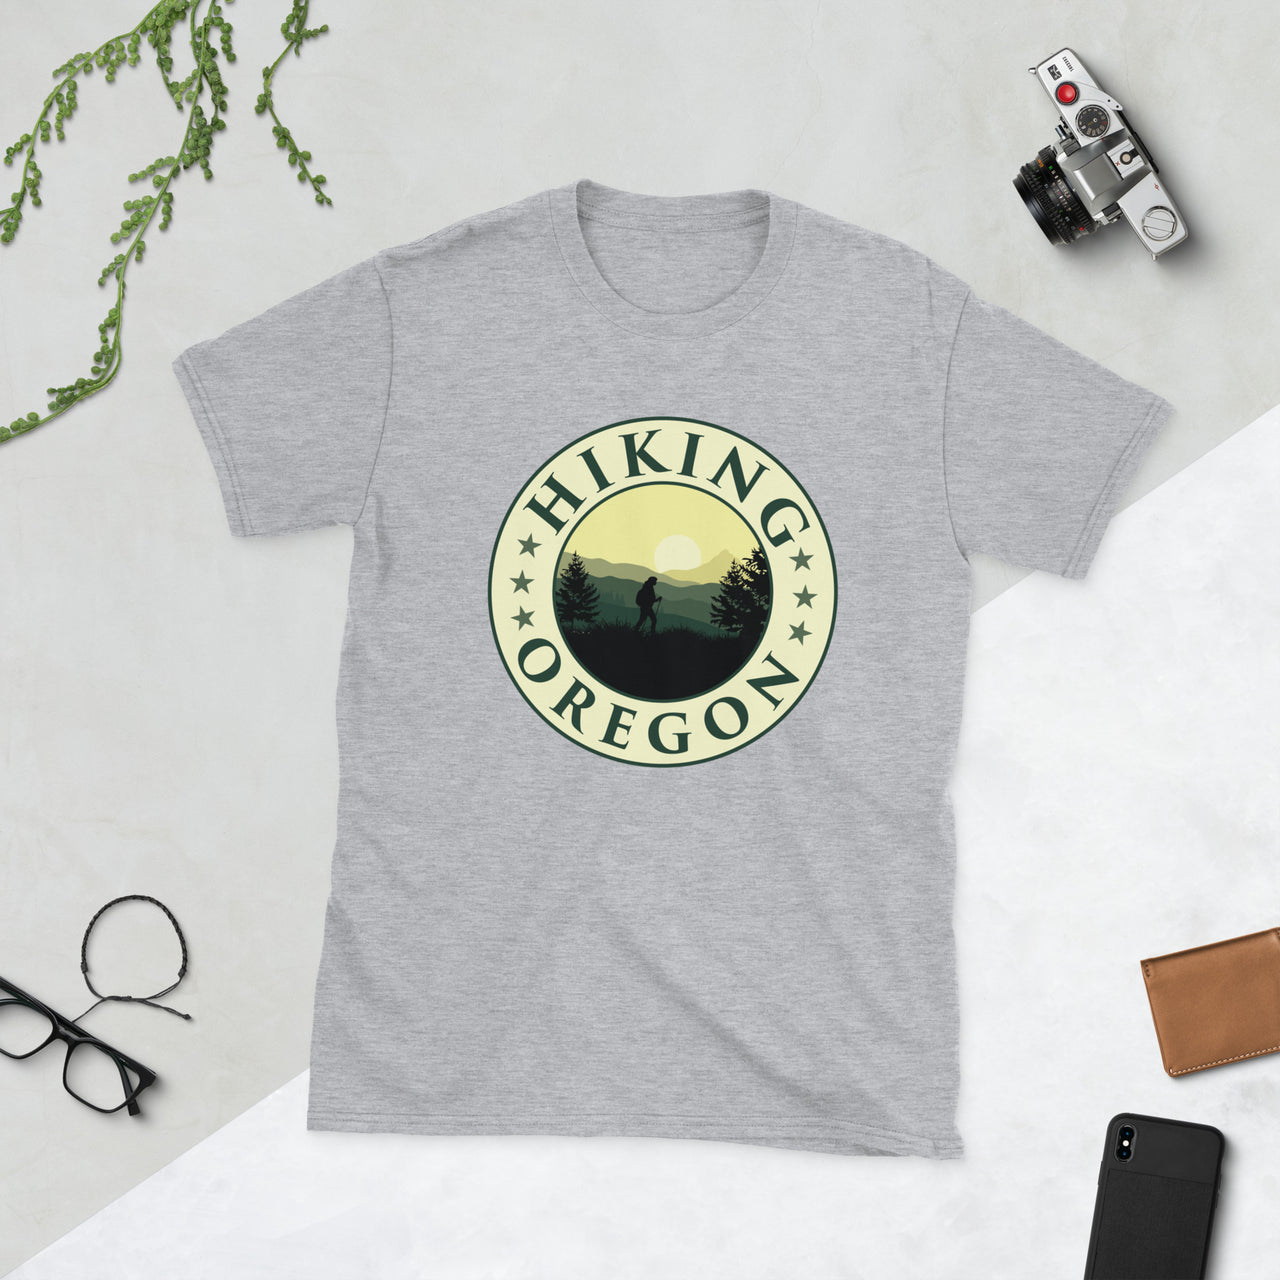 Hiking Oregon - Unisex T-Shirt